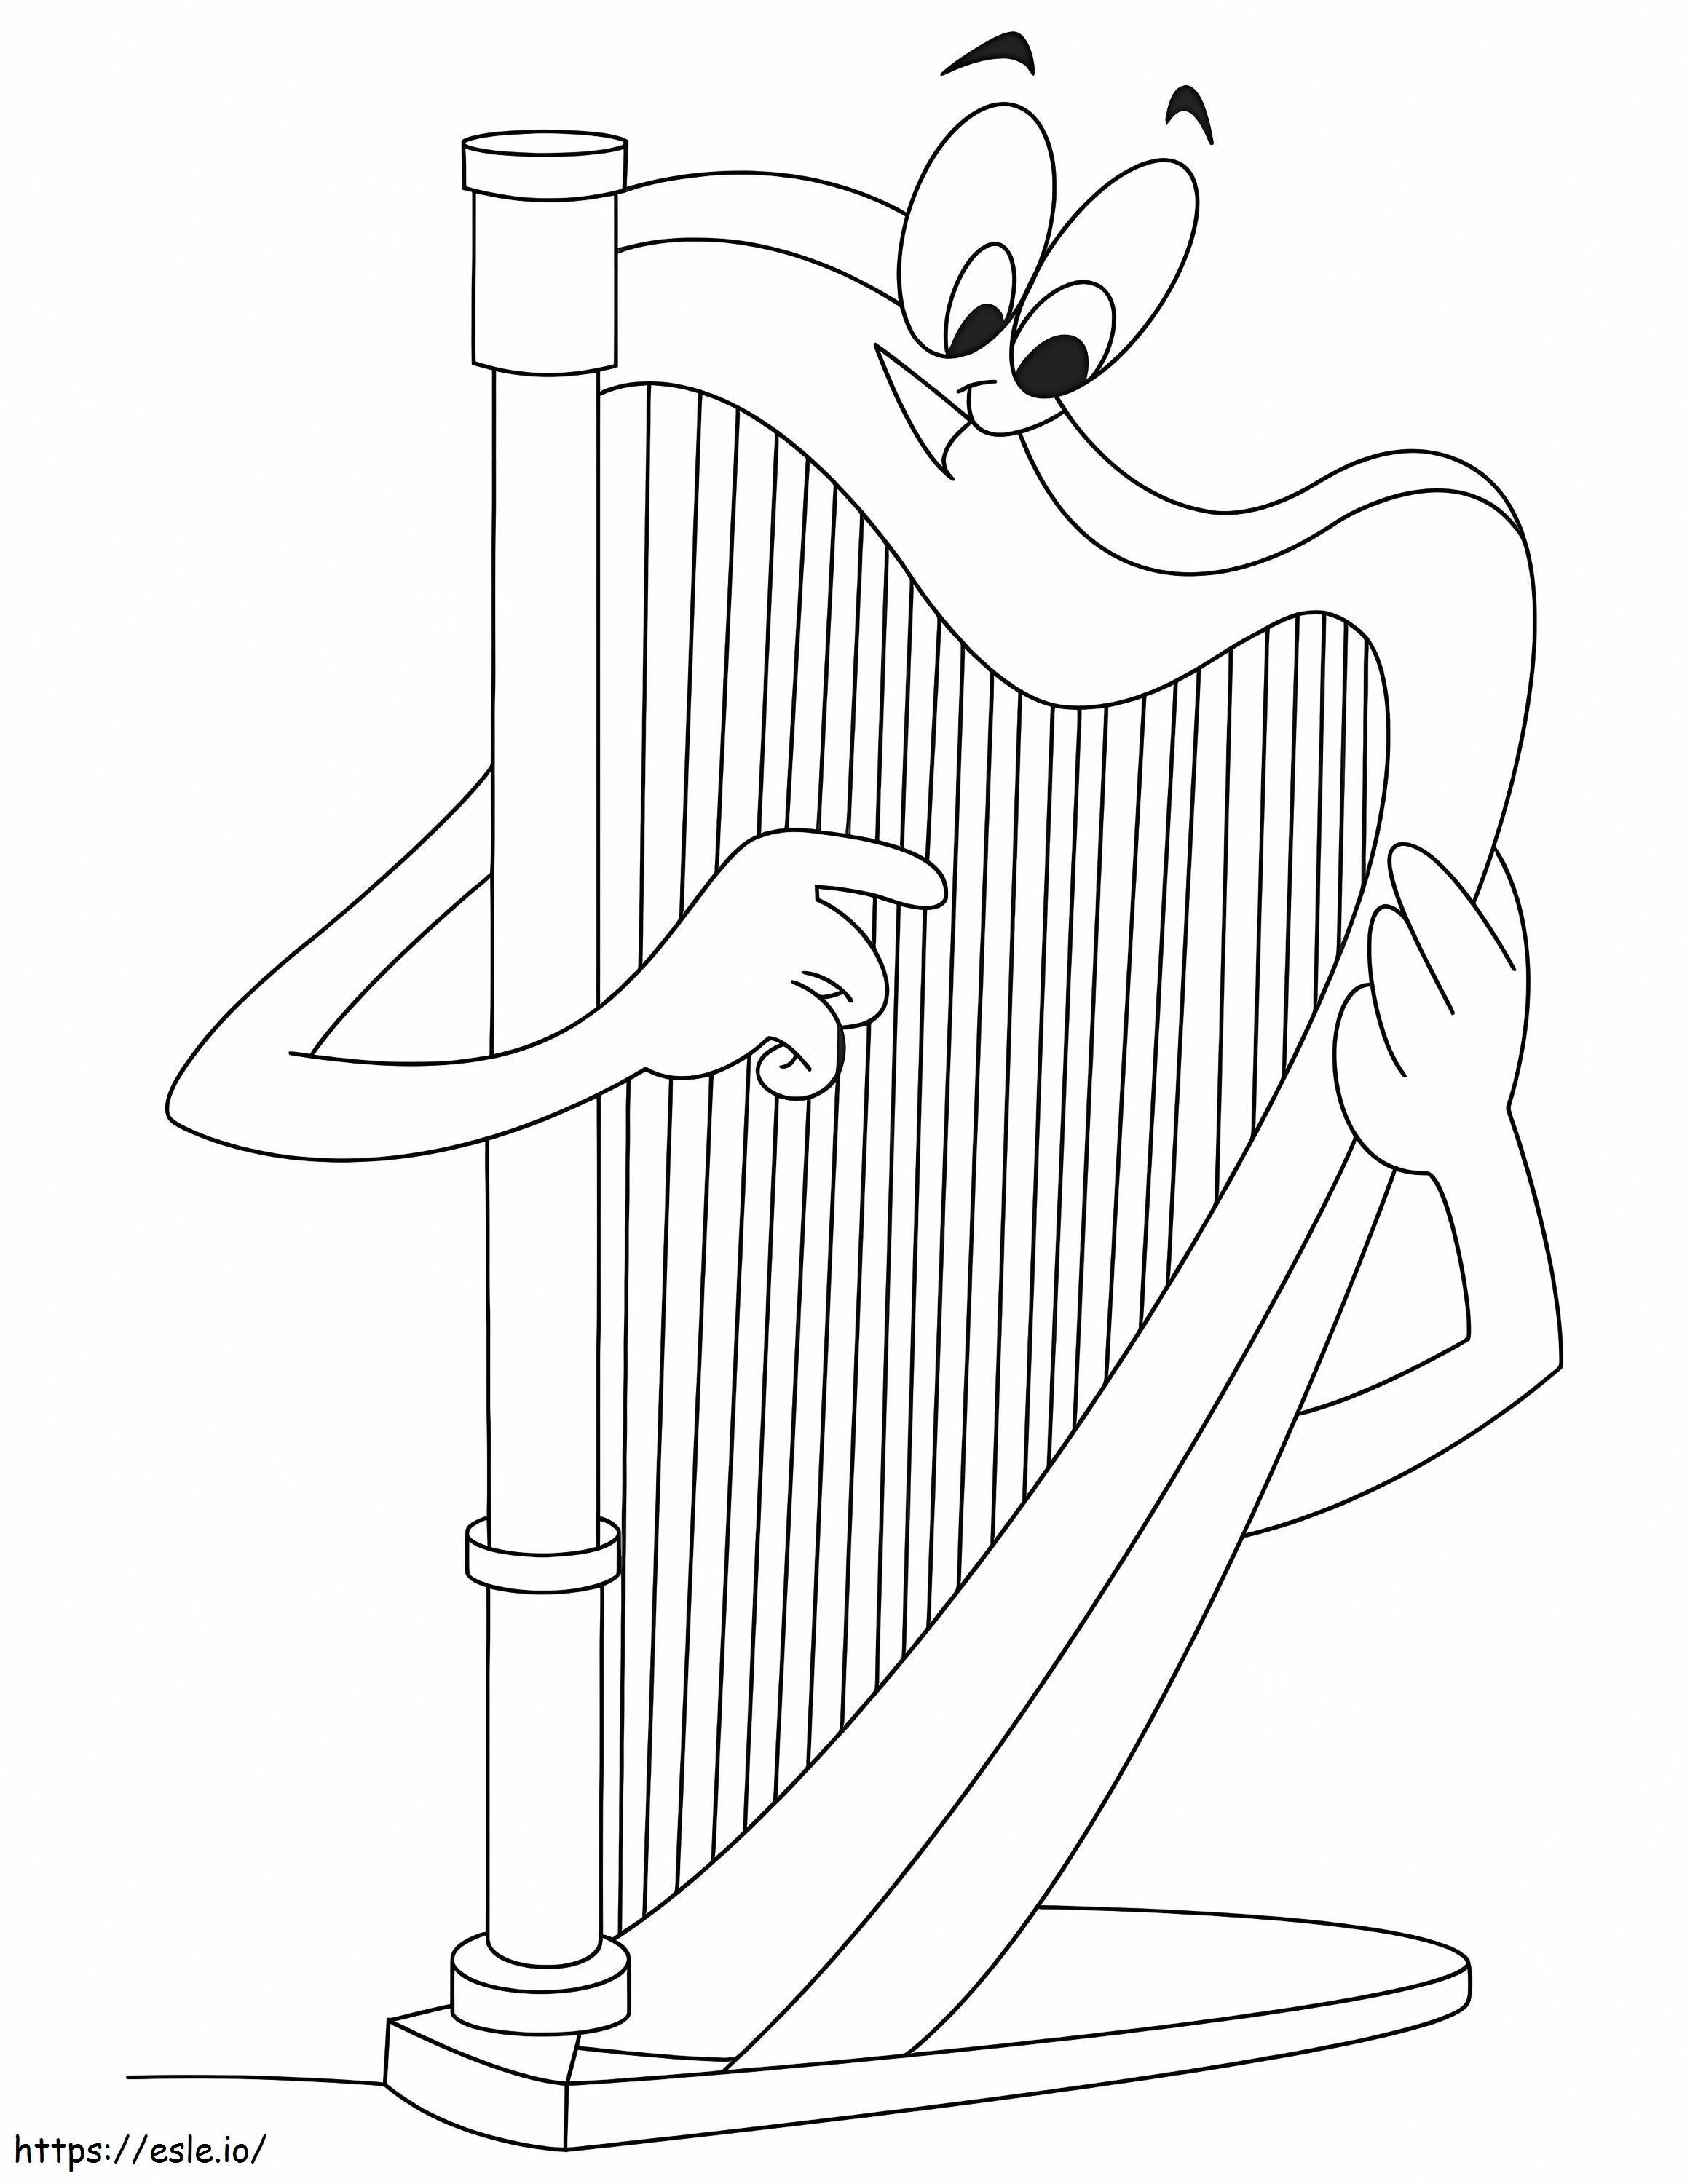 Cartoon Harp coloring page